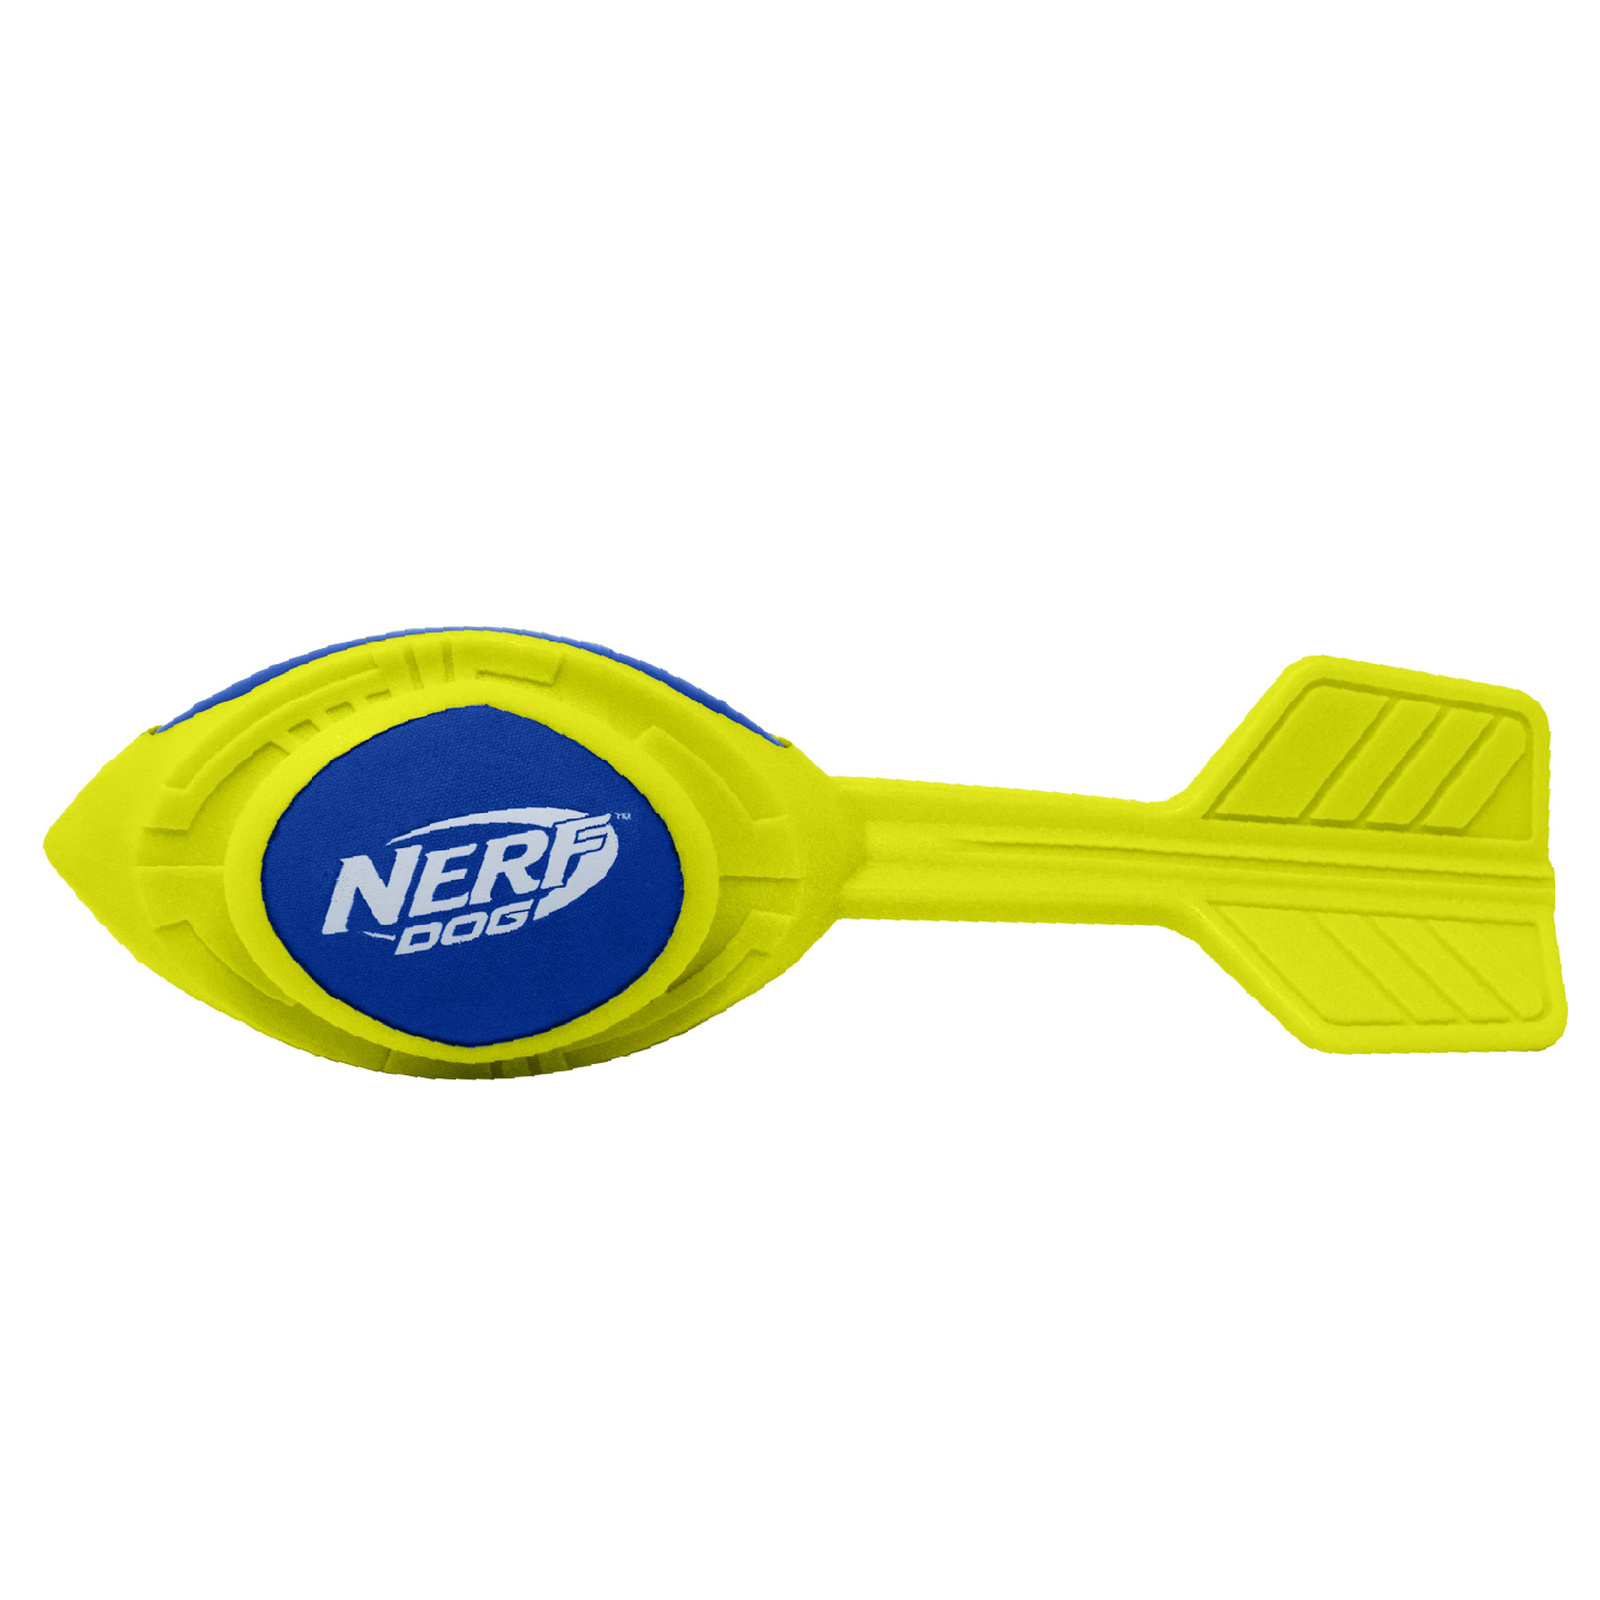 Nerf Nerf игрушка из вспененной резины 30 см (серия Мегатон) (290 г) nerf nerf мяч для регби из термопластичной резины 18 см серия мегатон синий оранжевый 254 г